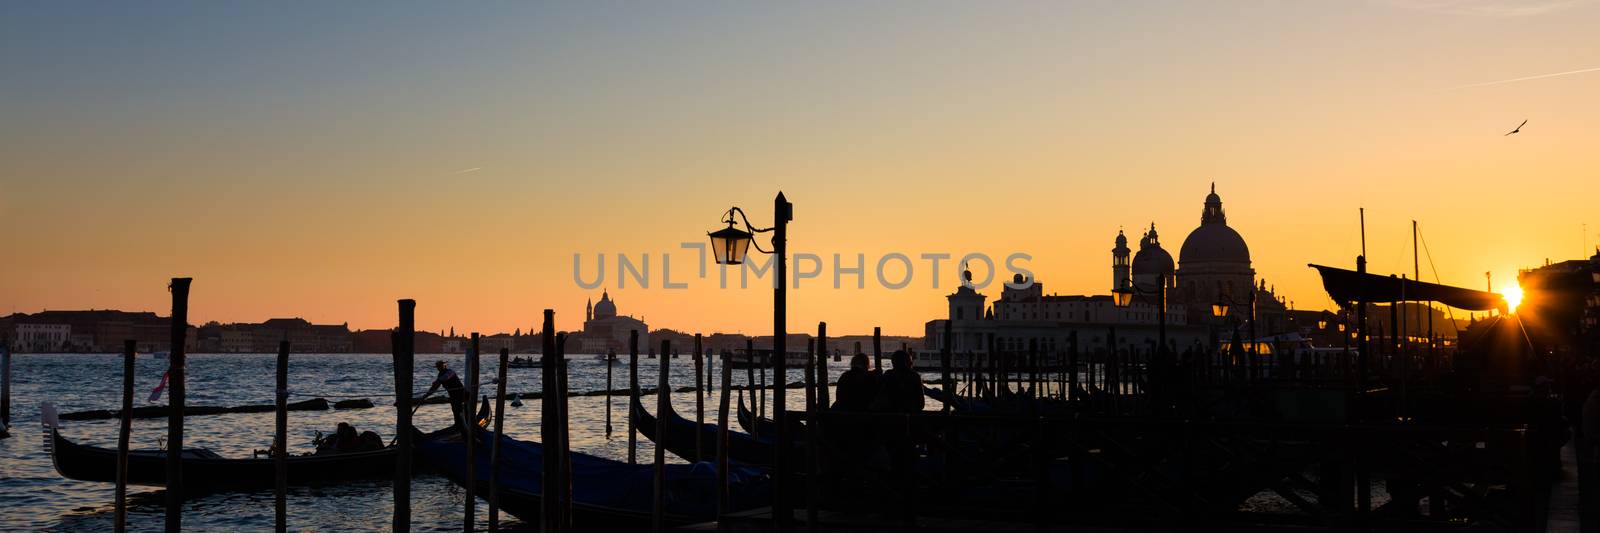 Romantic Italian city of Venice in sunset. World Heritage Site. Traditional Venetian wooden boats, gondolier and Roman Catholic church Basilica di Santa Maria della Salute.